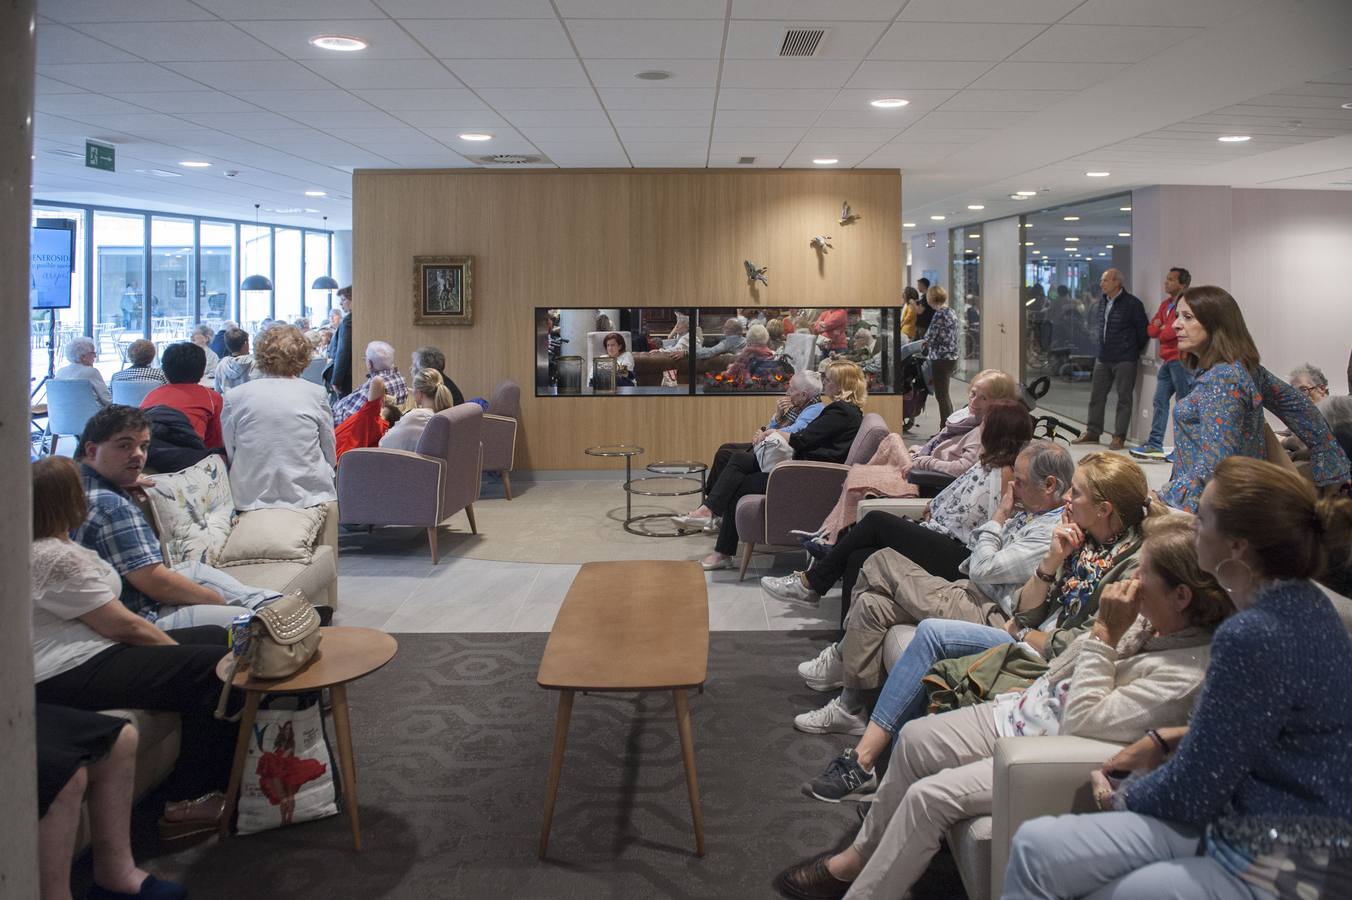 El centro para residentes de avanzada edad amplía sus instalaciones y moderniza su atención geriátrica. Una herencia ha financiado el proyecto